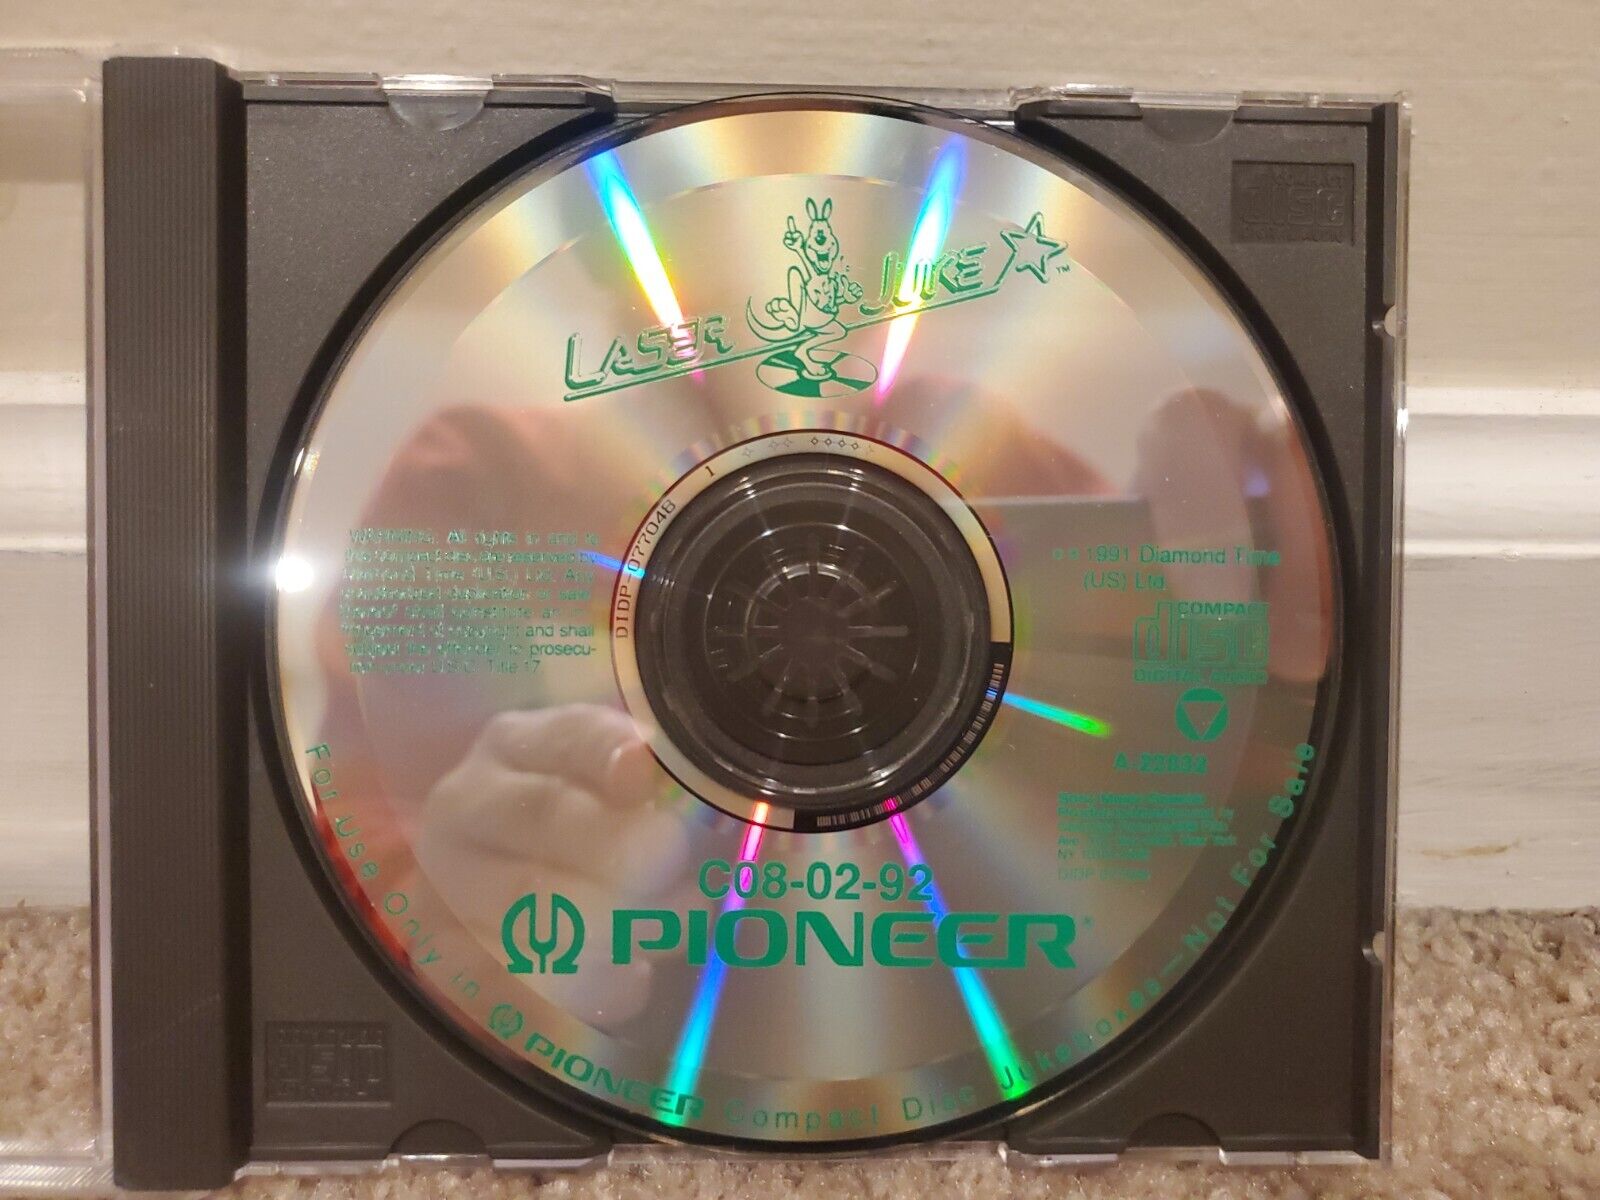 Laser Juke Jukebox Pioneer CD C08-02-92 1991